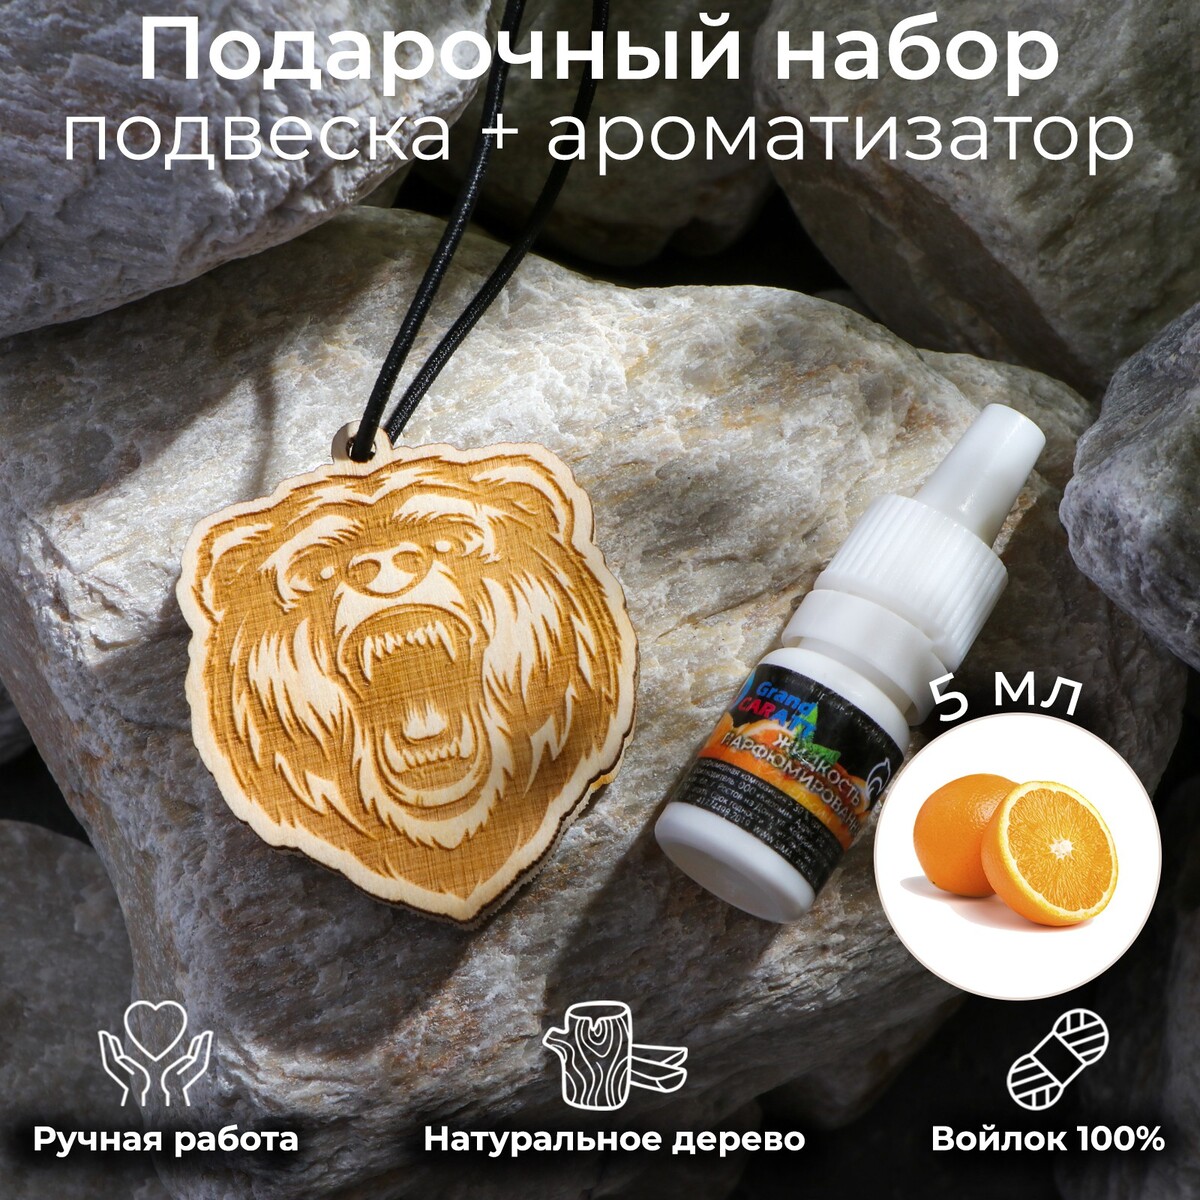 Подвеска деревянная медведь + аромамасло апельсин 5 мл, зип-лок Grand Caratt